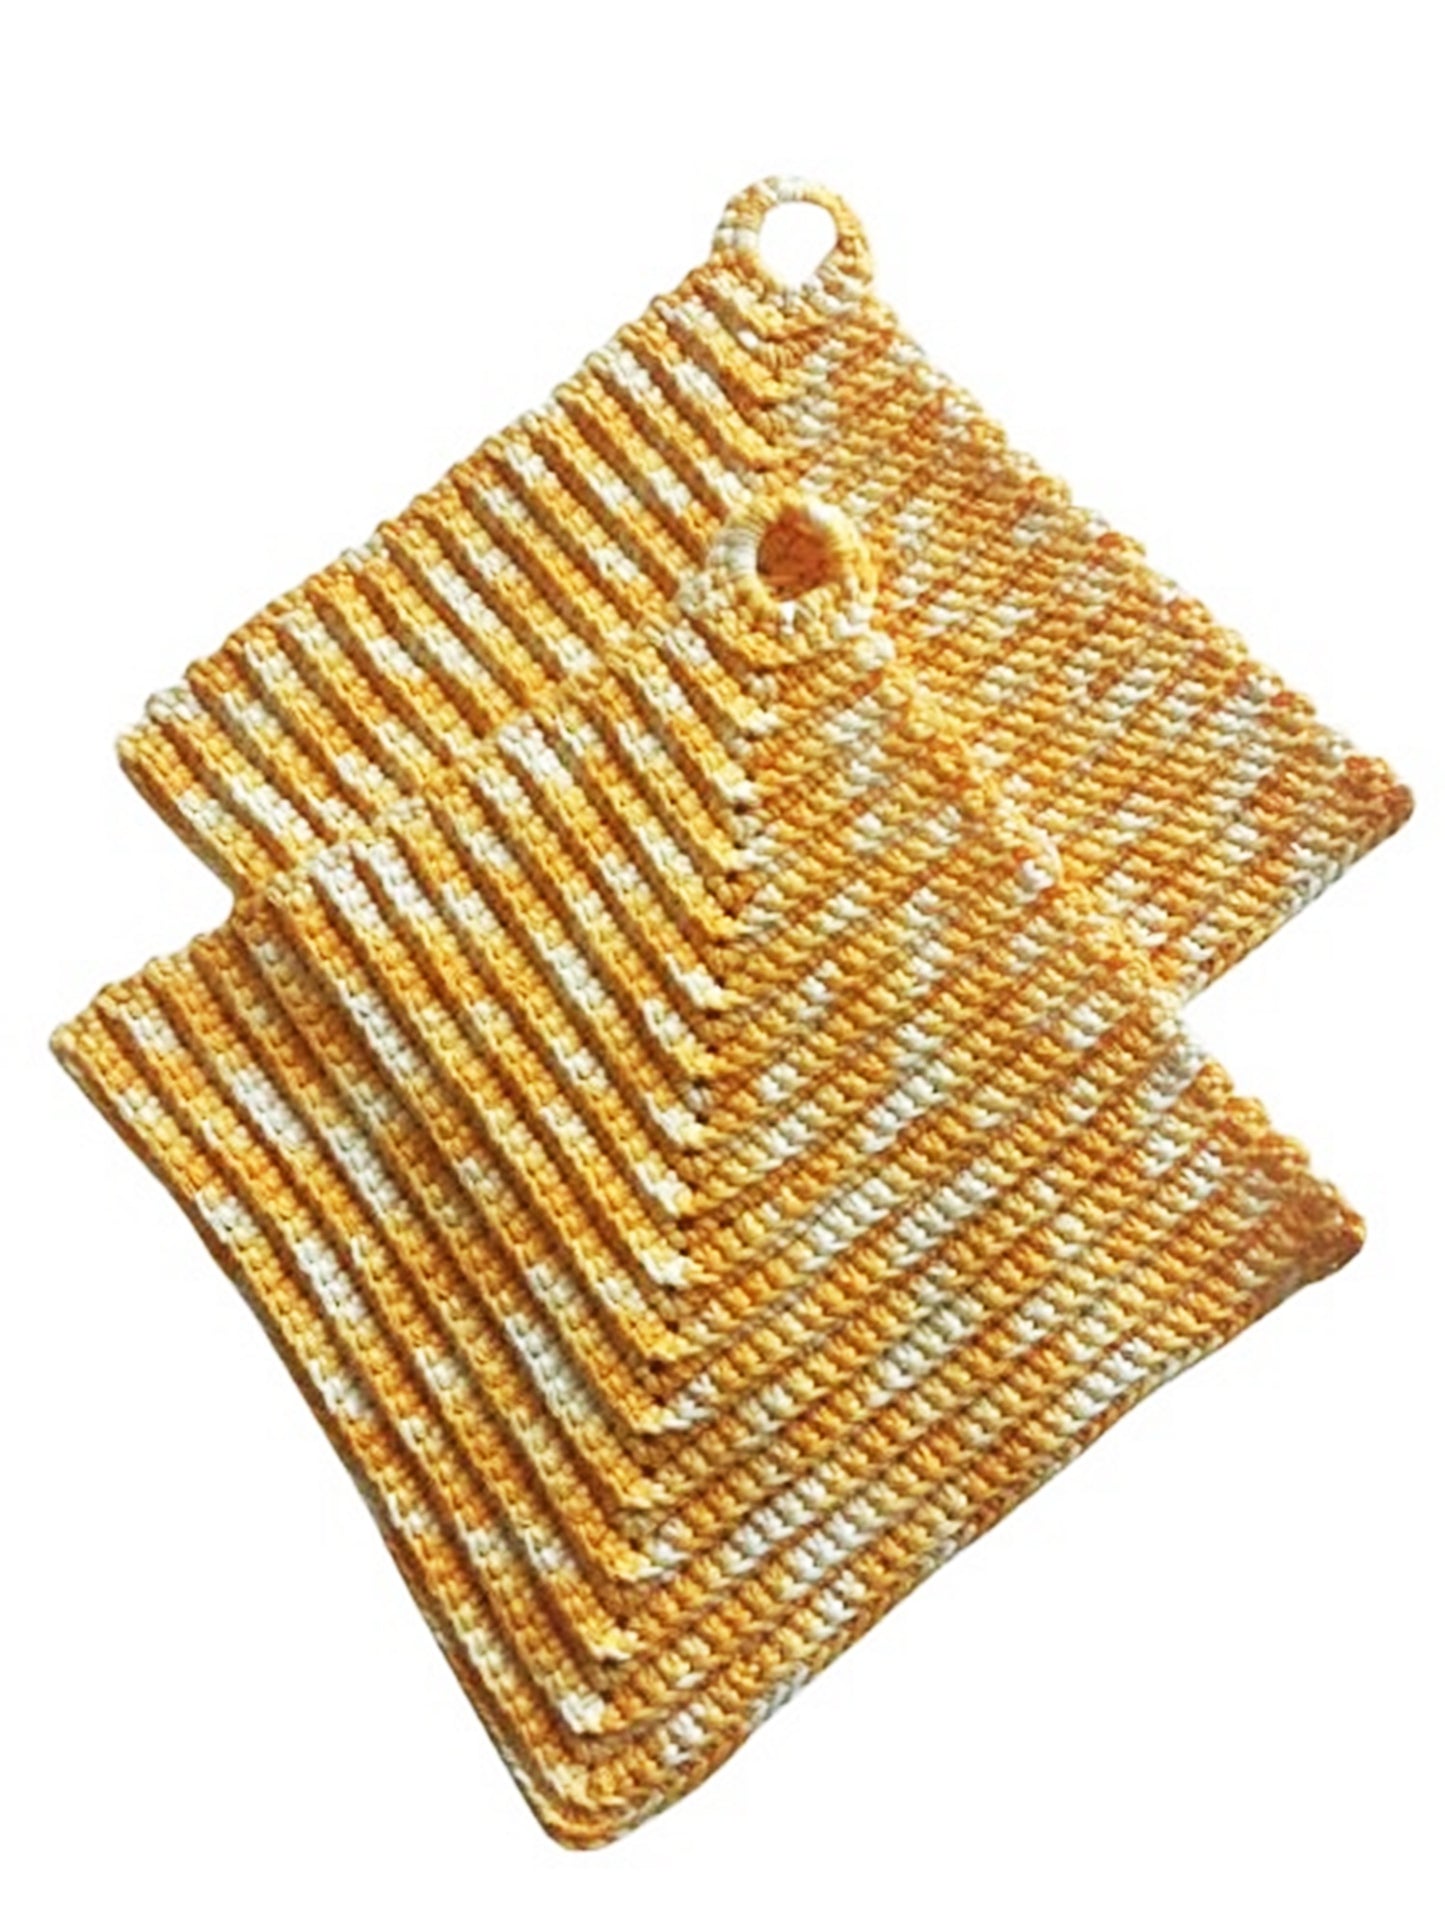 Πολύχρωμες πιάστρες χοντρά κροσέ σε κλασικό στιλ περίπου 19 x 19 cm - 100% βαμβάκι